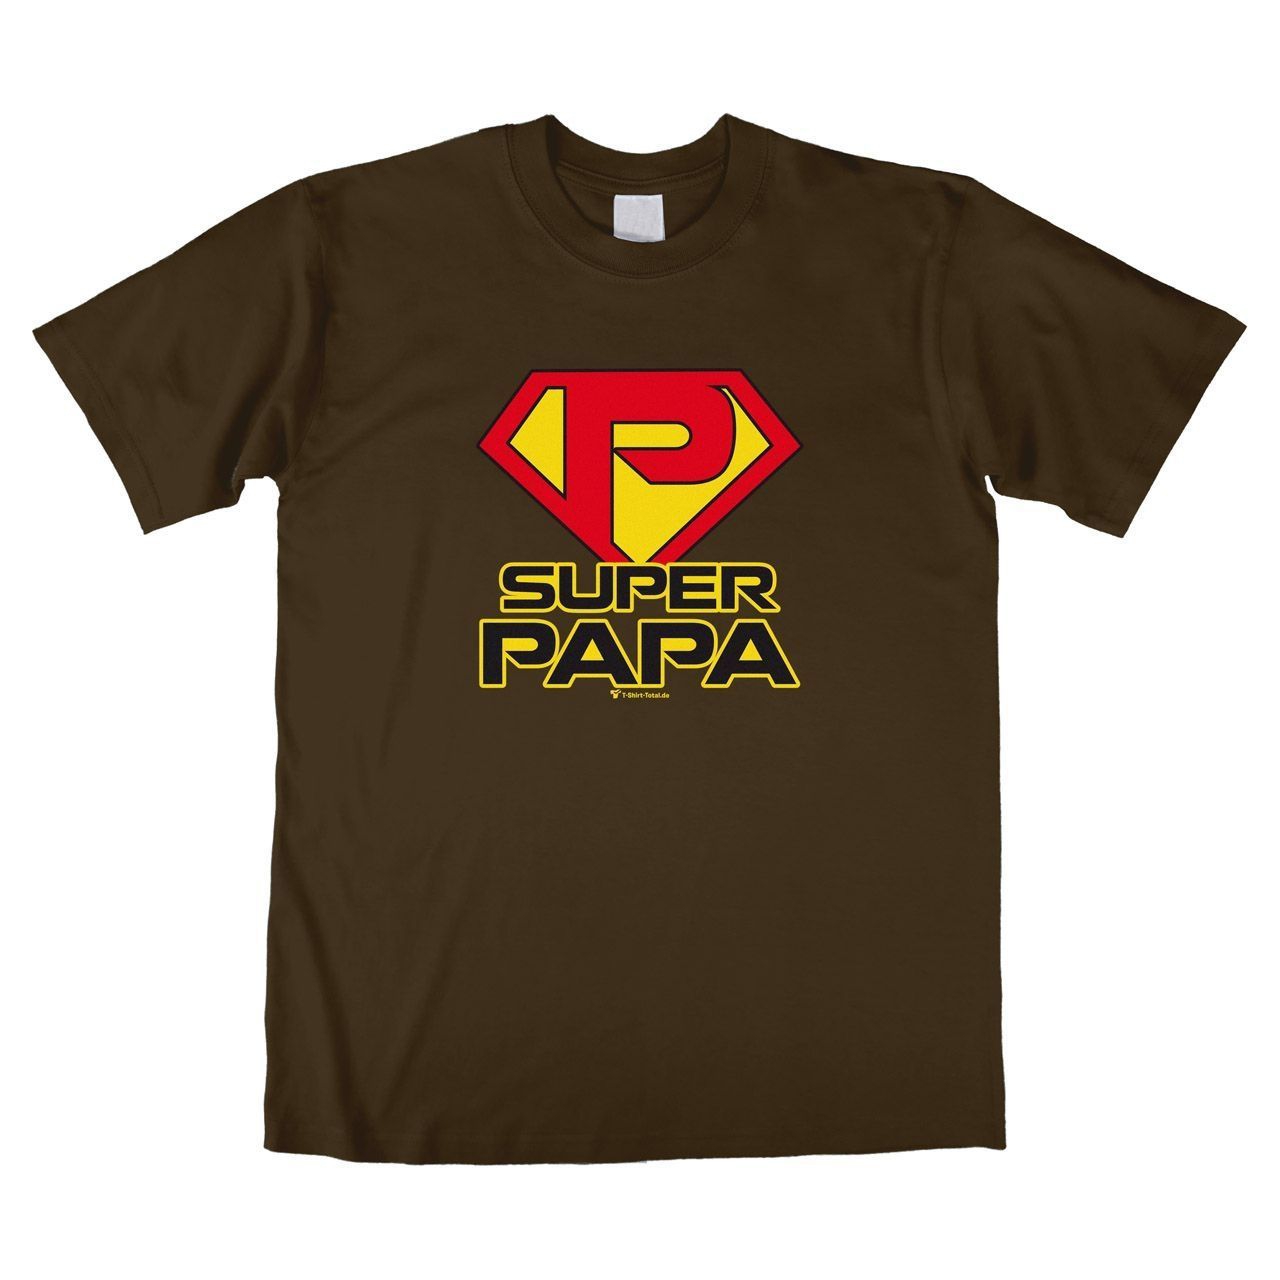 Super Papa Unisex T-Shirt braun Large